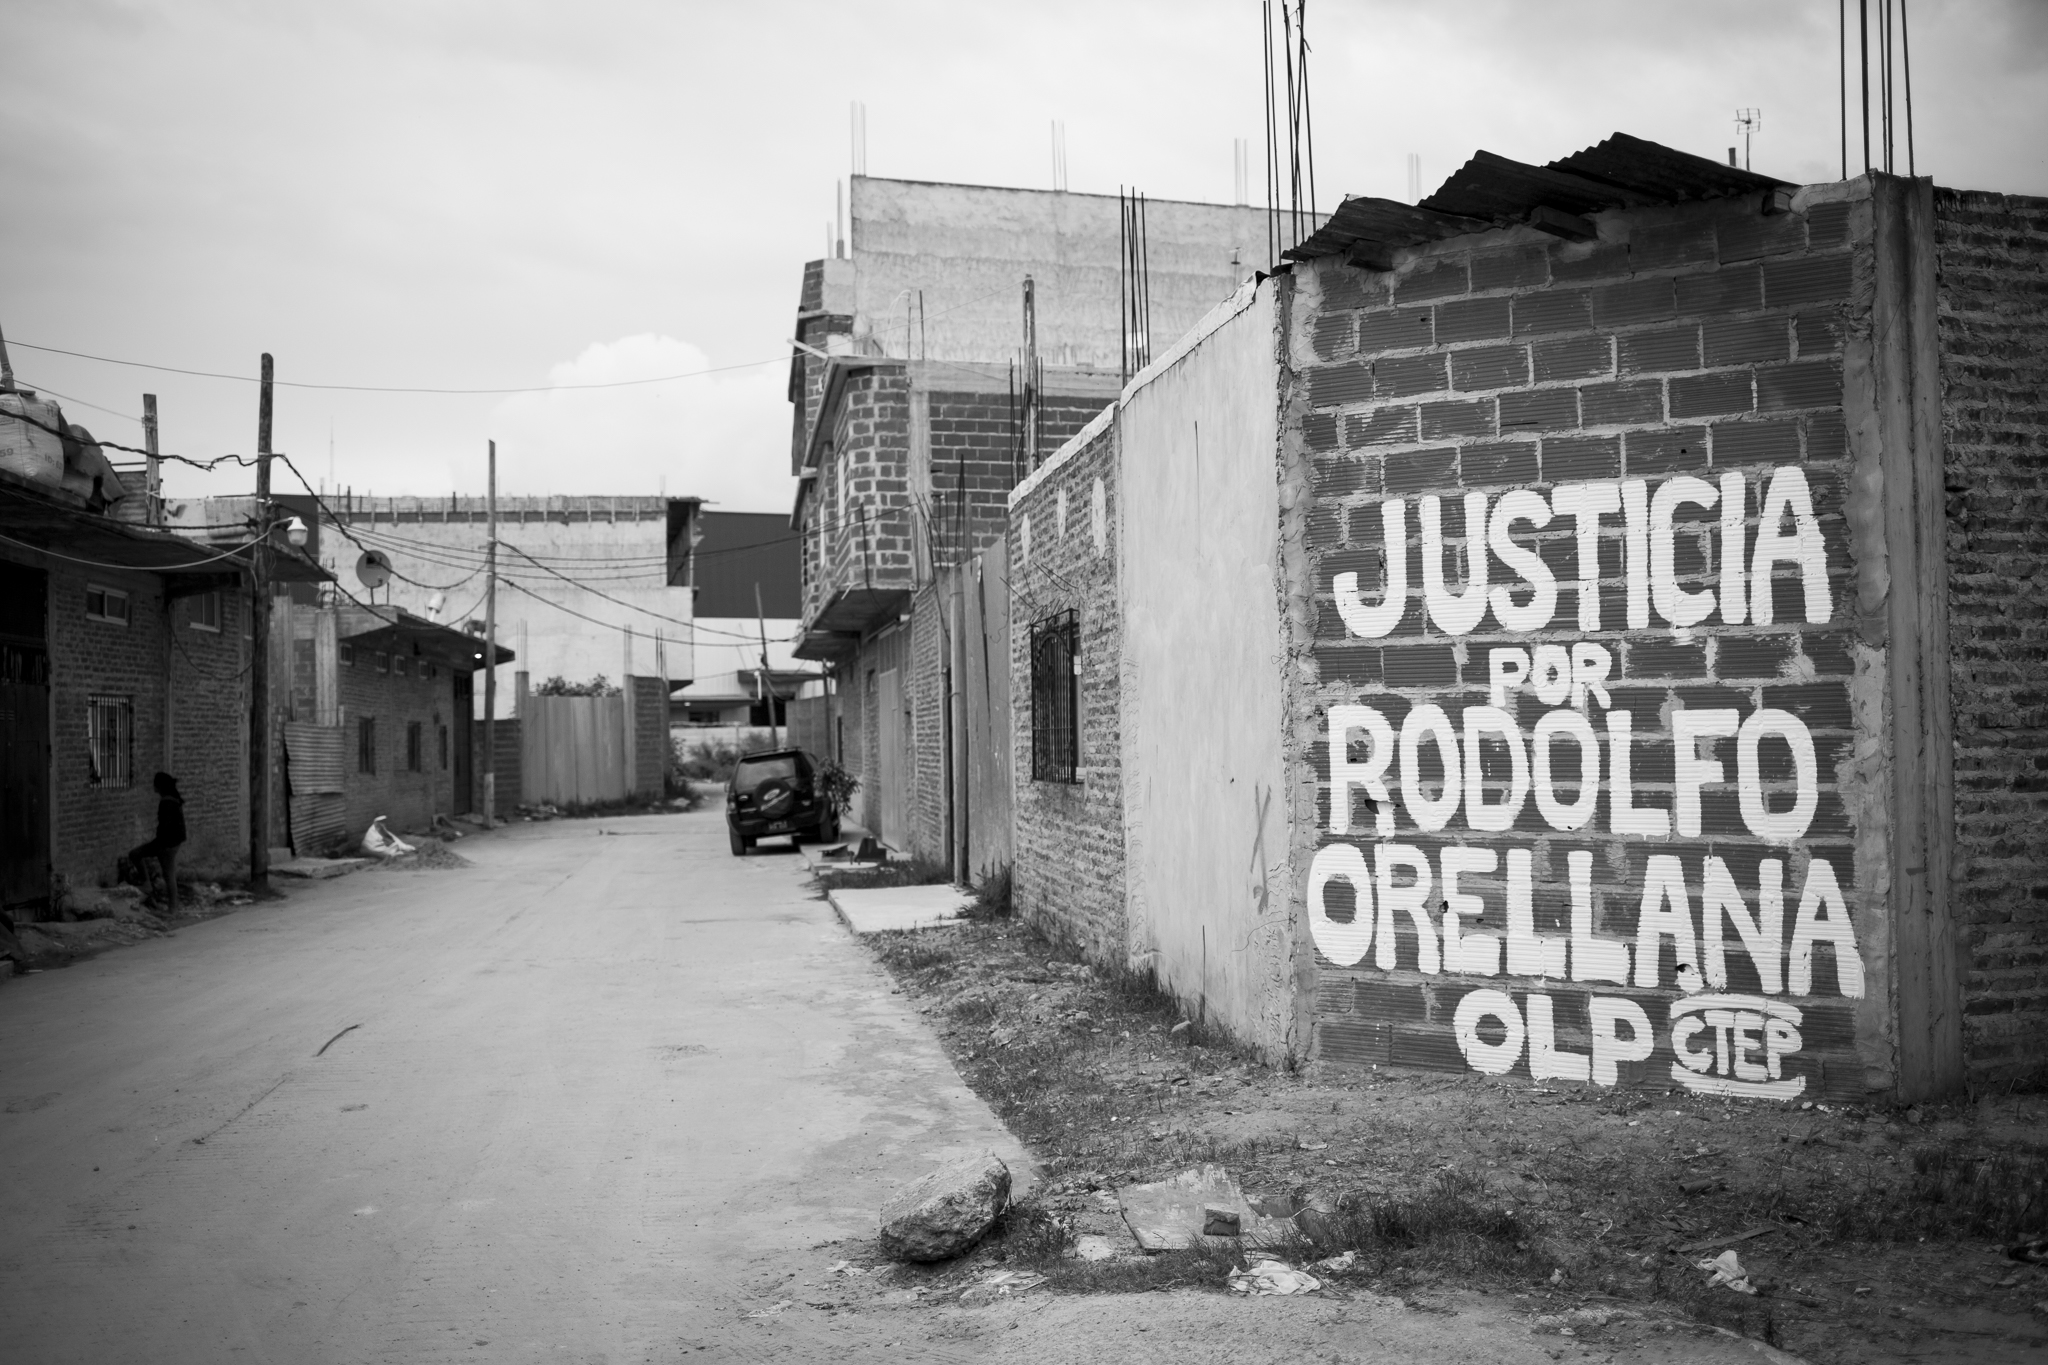 Las sin tierra: ¿Quién mató a Rodolfo Orellana?